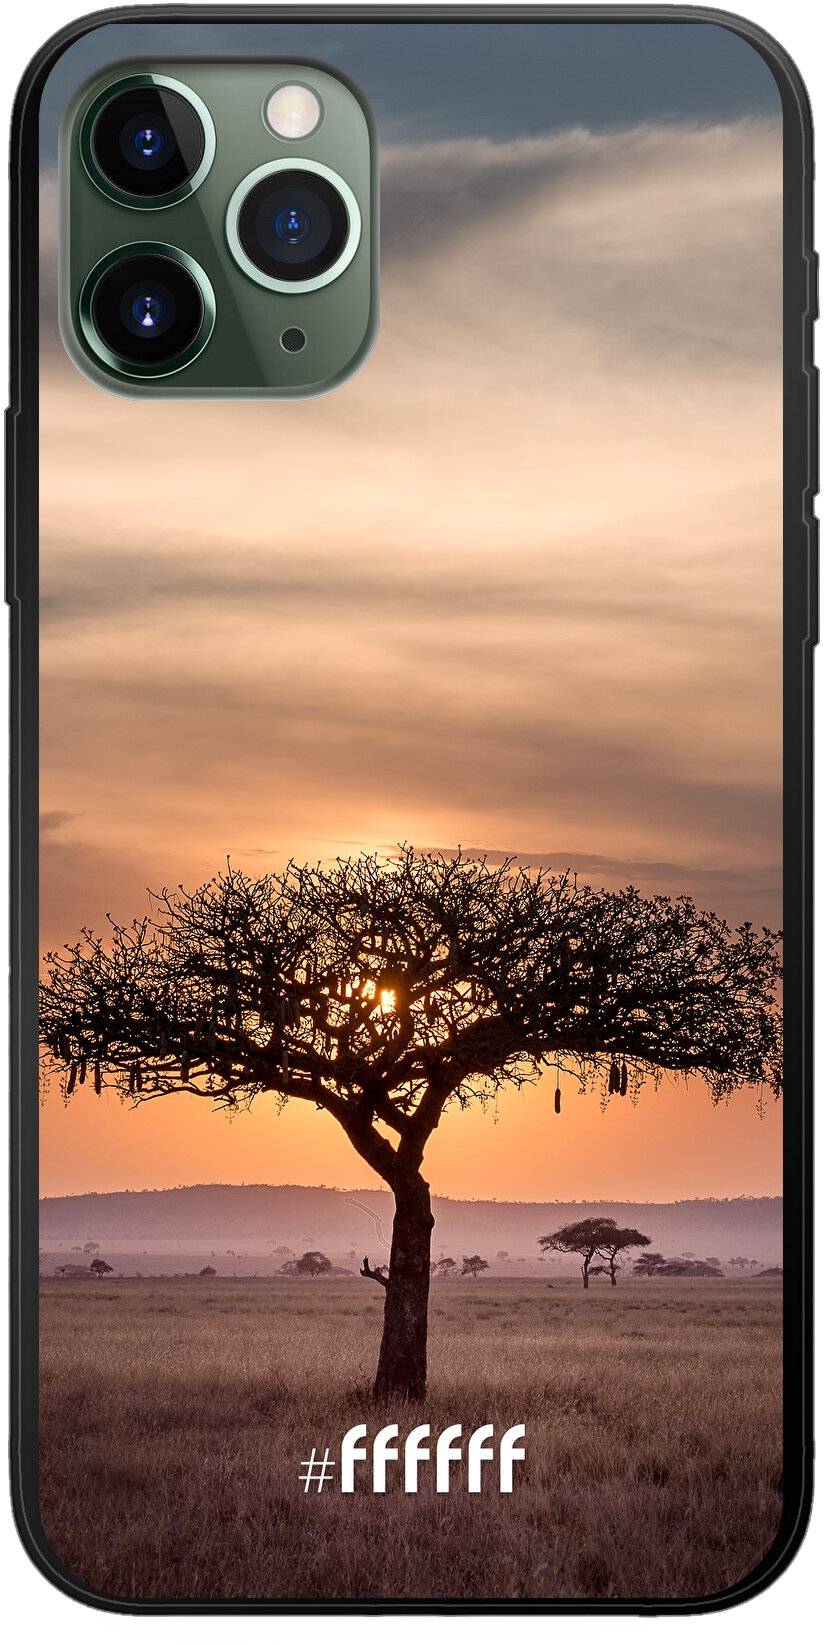 Tanzania iPhone 11 Pro